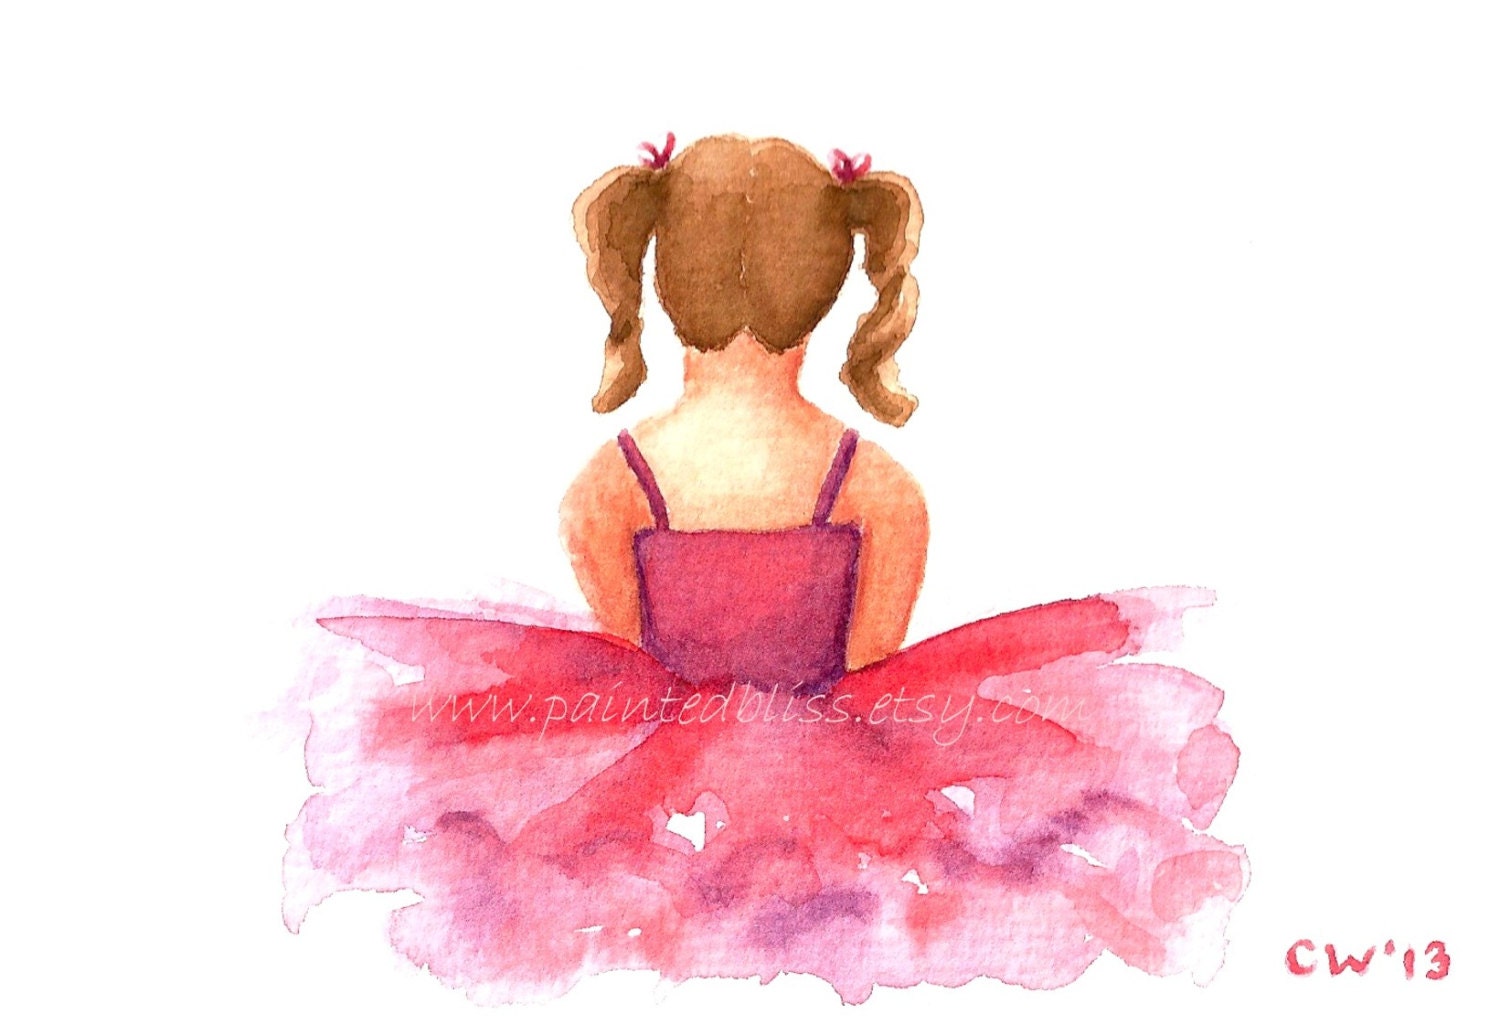 Балерина со спины